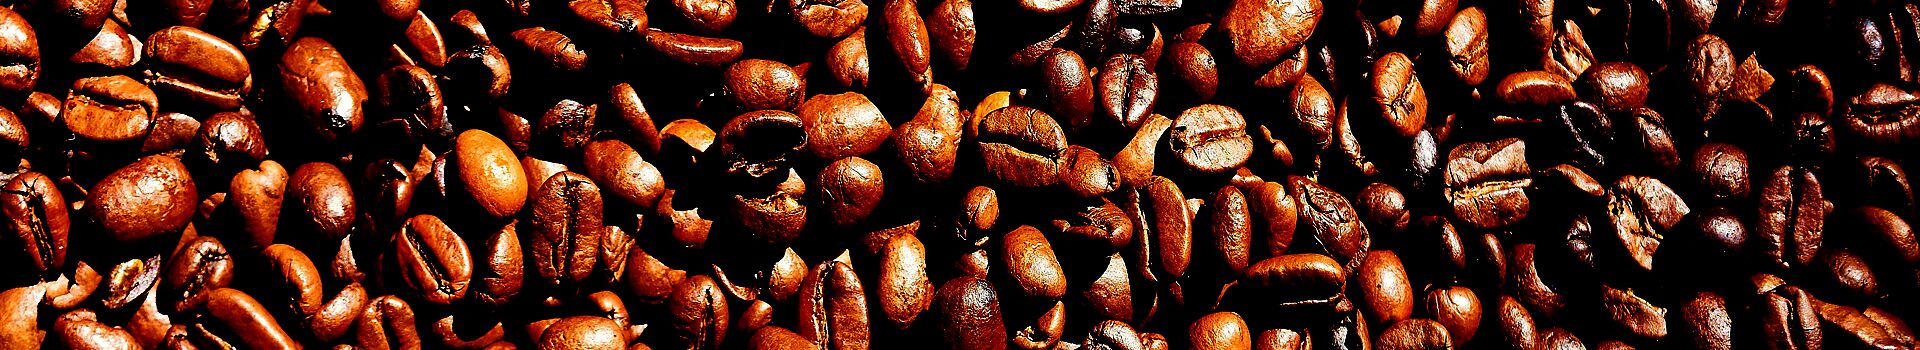 Самые популярные сорта кофе в мире